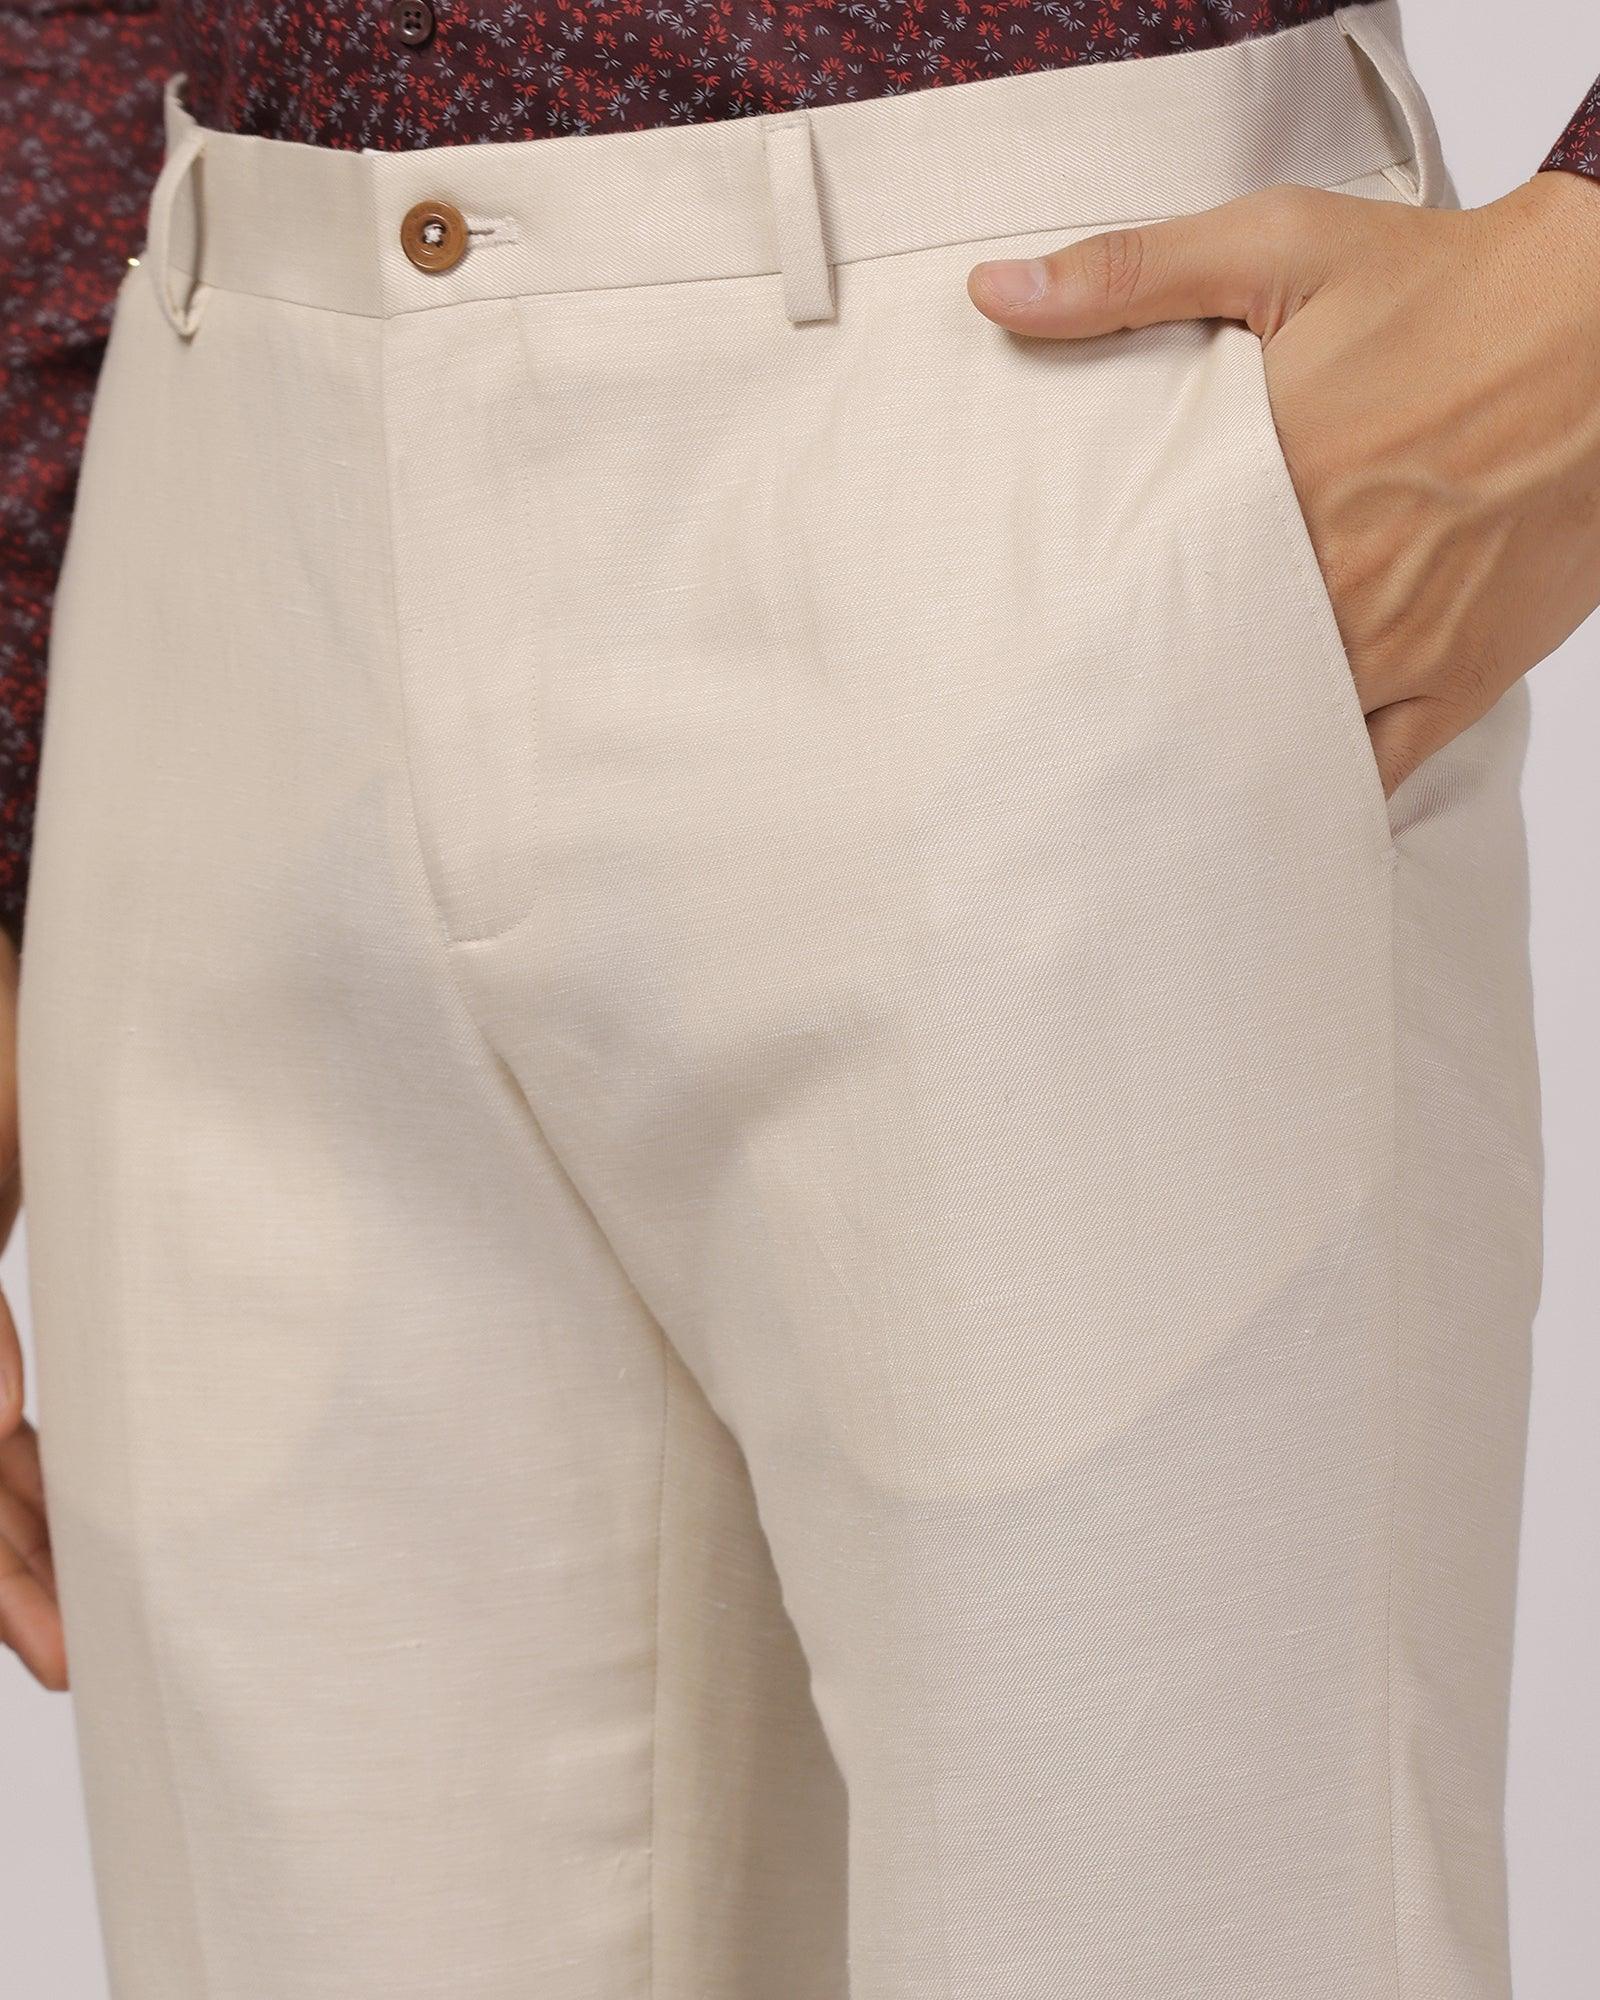 Luxe Linen Slim Comfort B-95 Formal Beige Solid Trouser - Platina